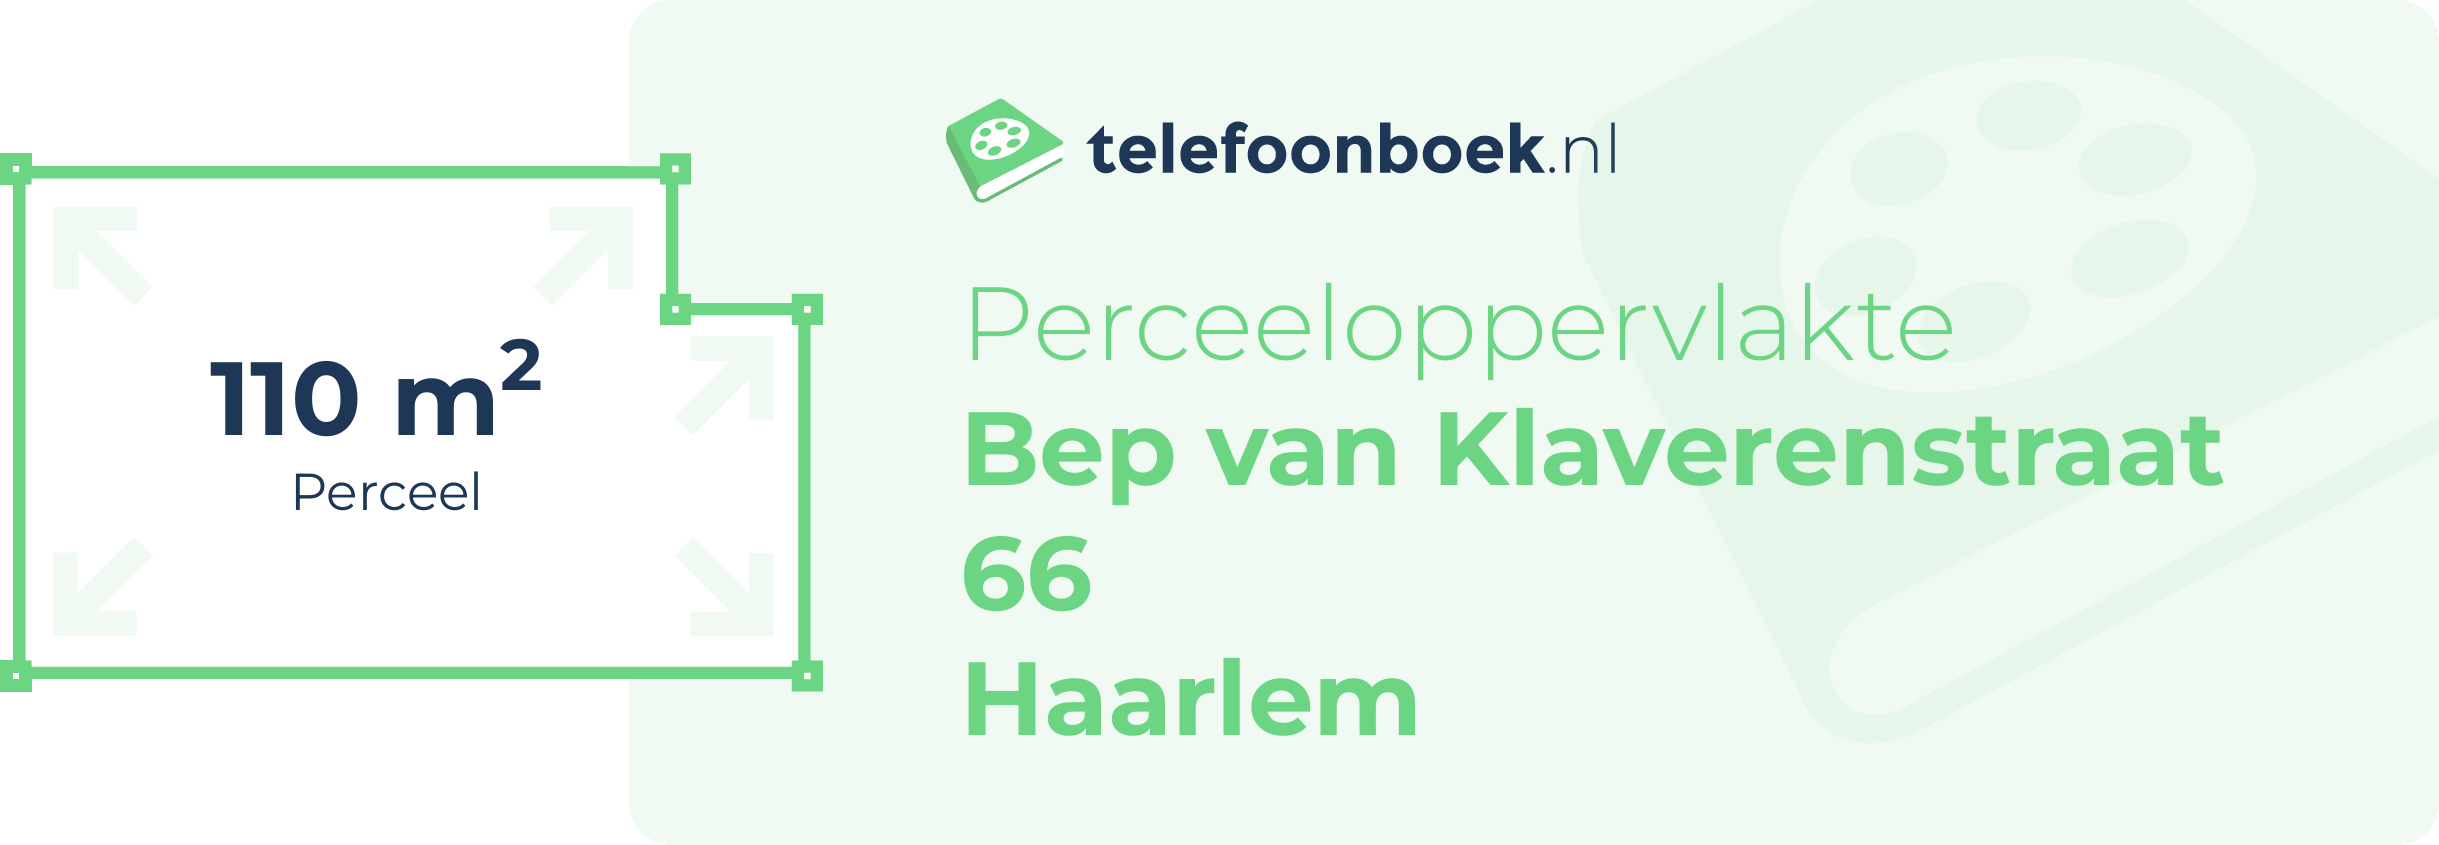 Perceeloppervlakte Bep Van Klaverenstraat 66 Haarlem